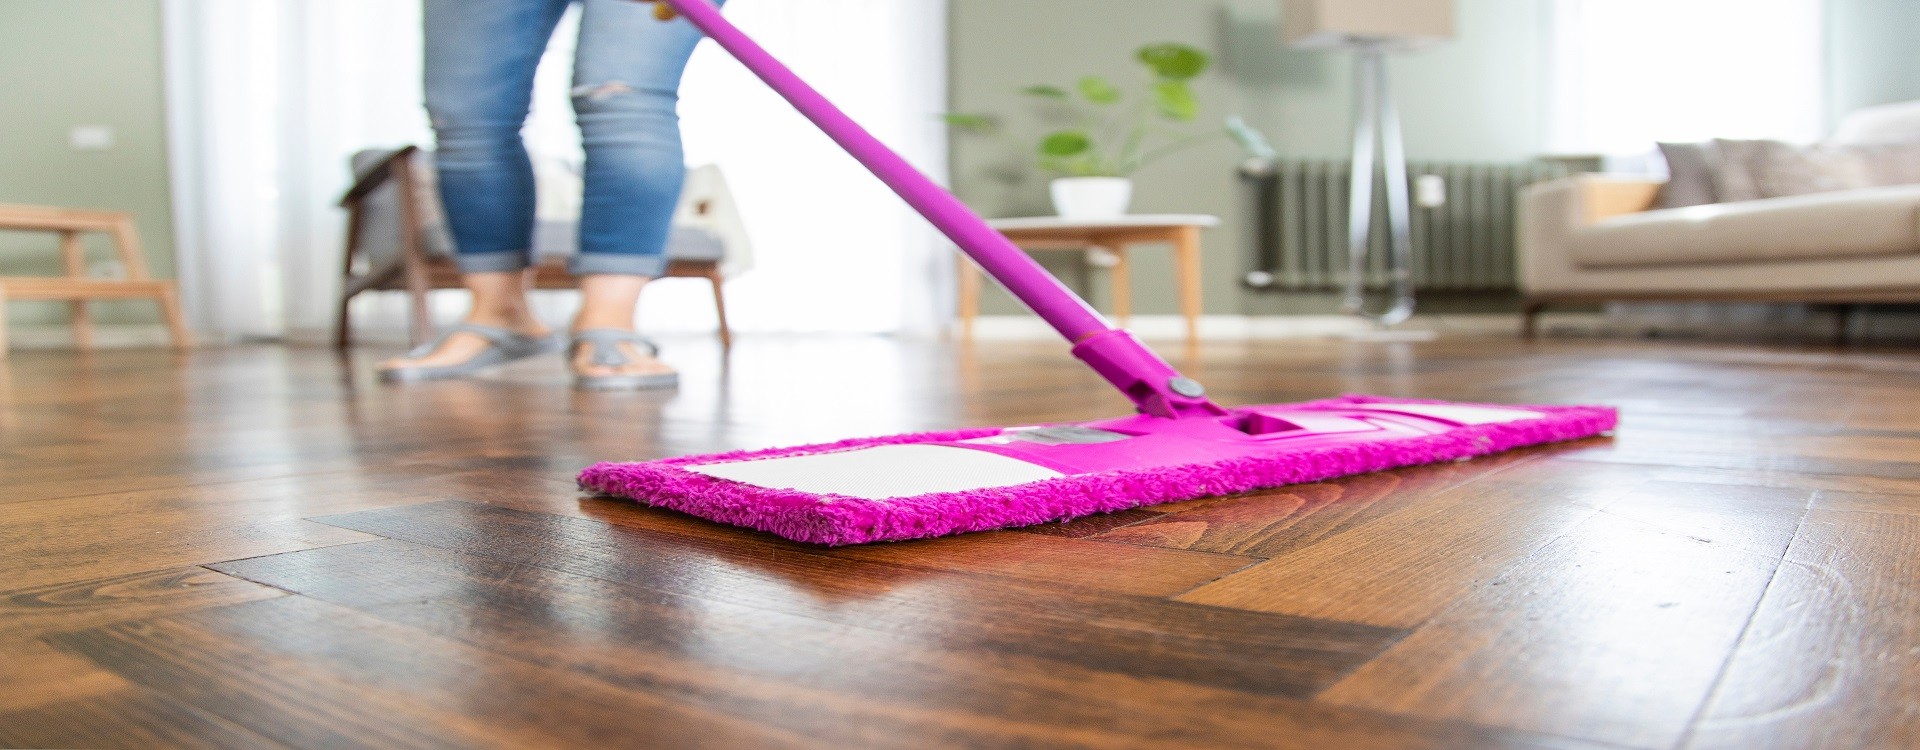 Cómo limpiar y cuidar los suelos laminados